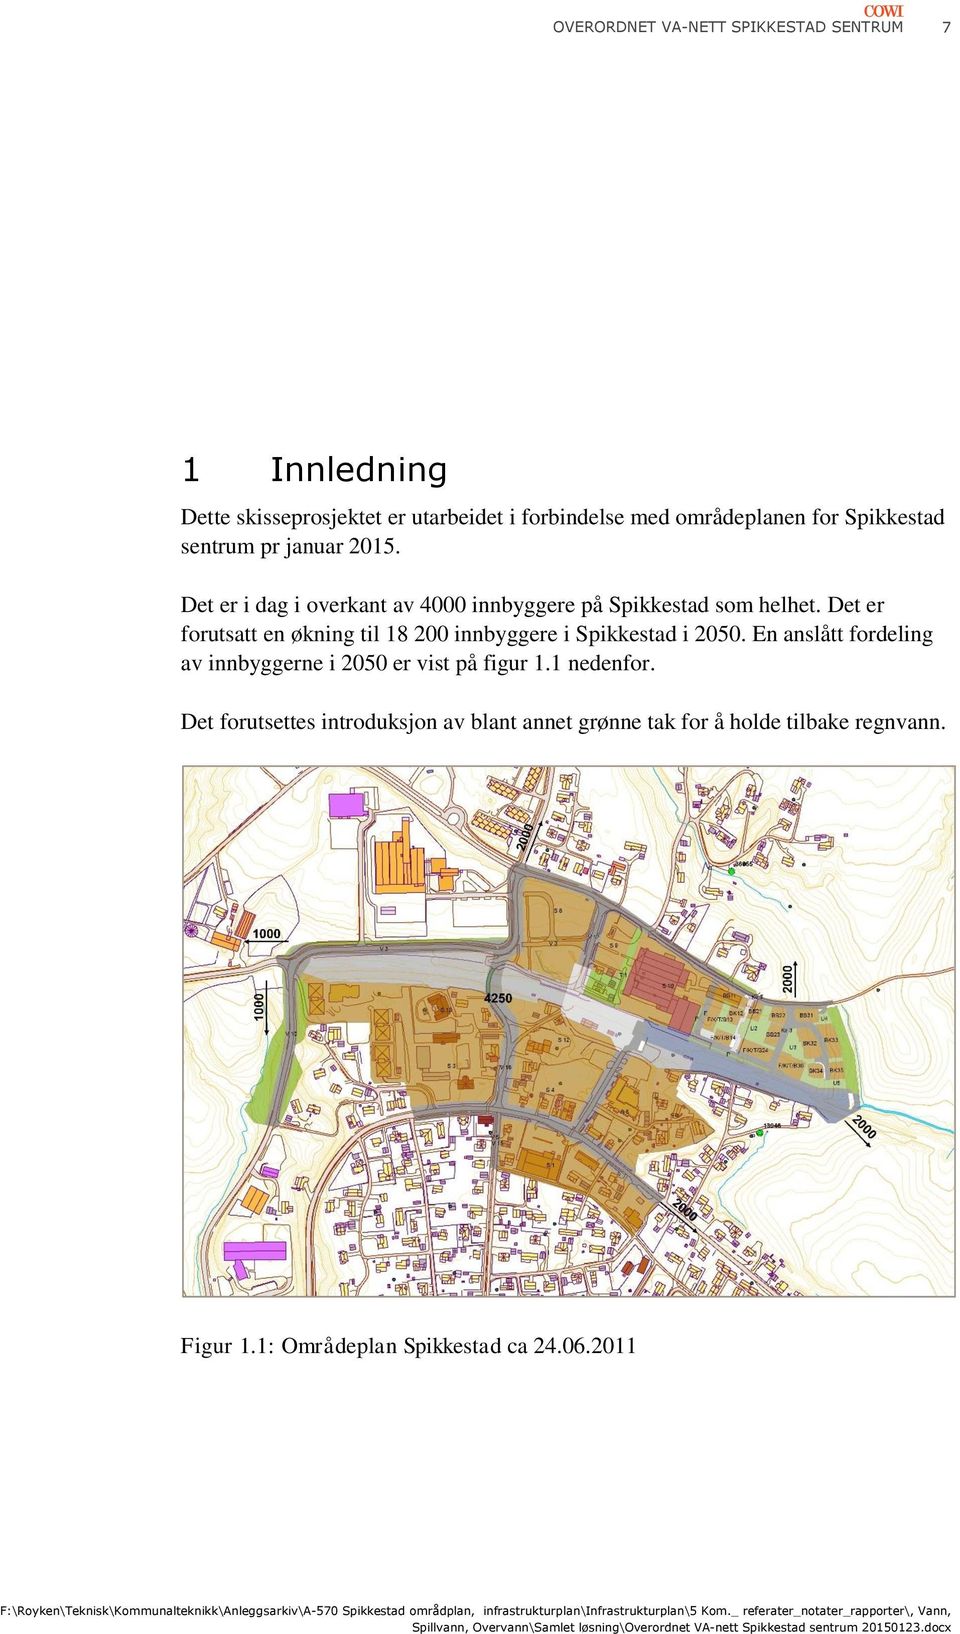 Det er forutsatt en økning til 18 200 innbyggere i Spikkestad i 2050.